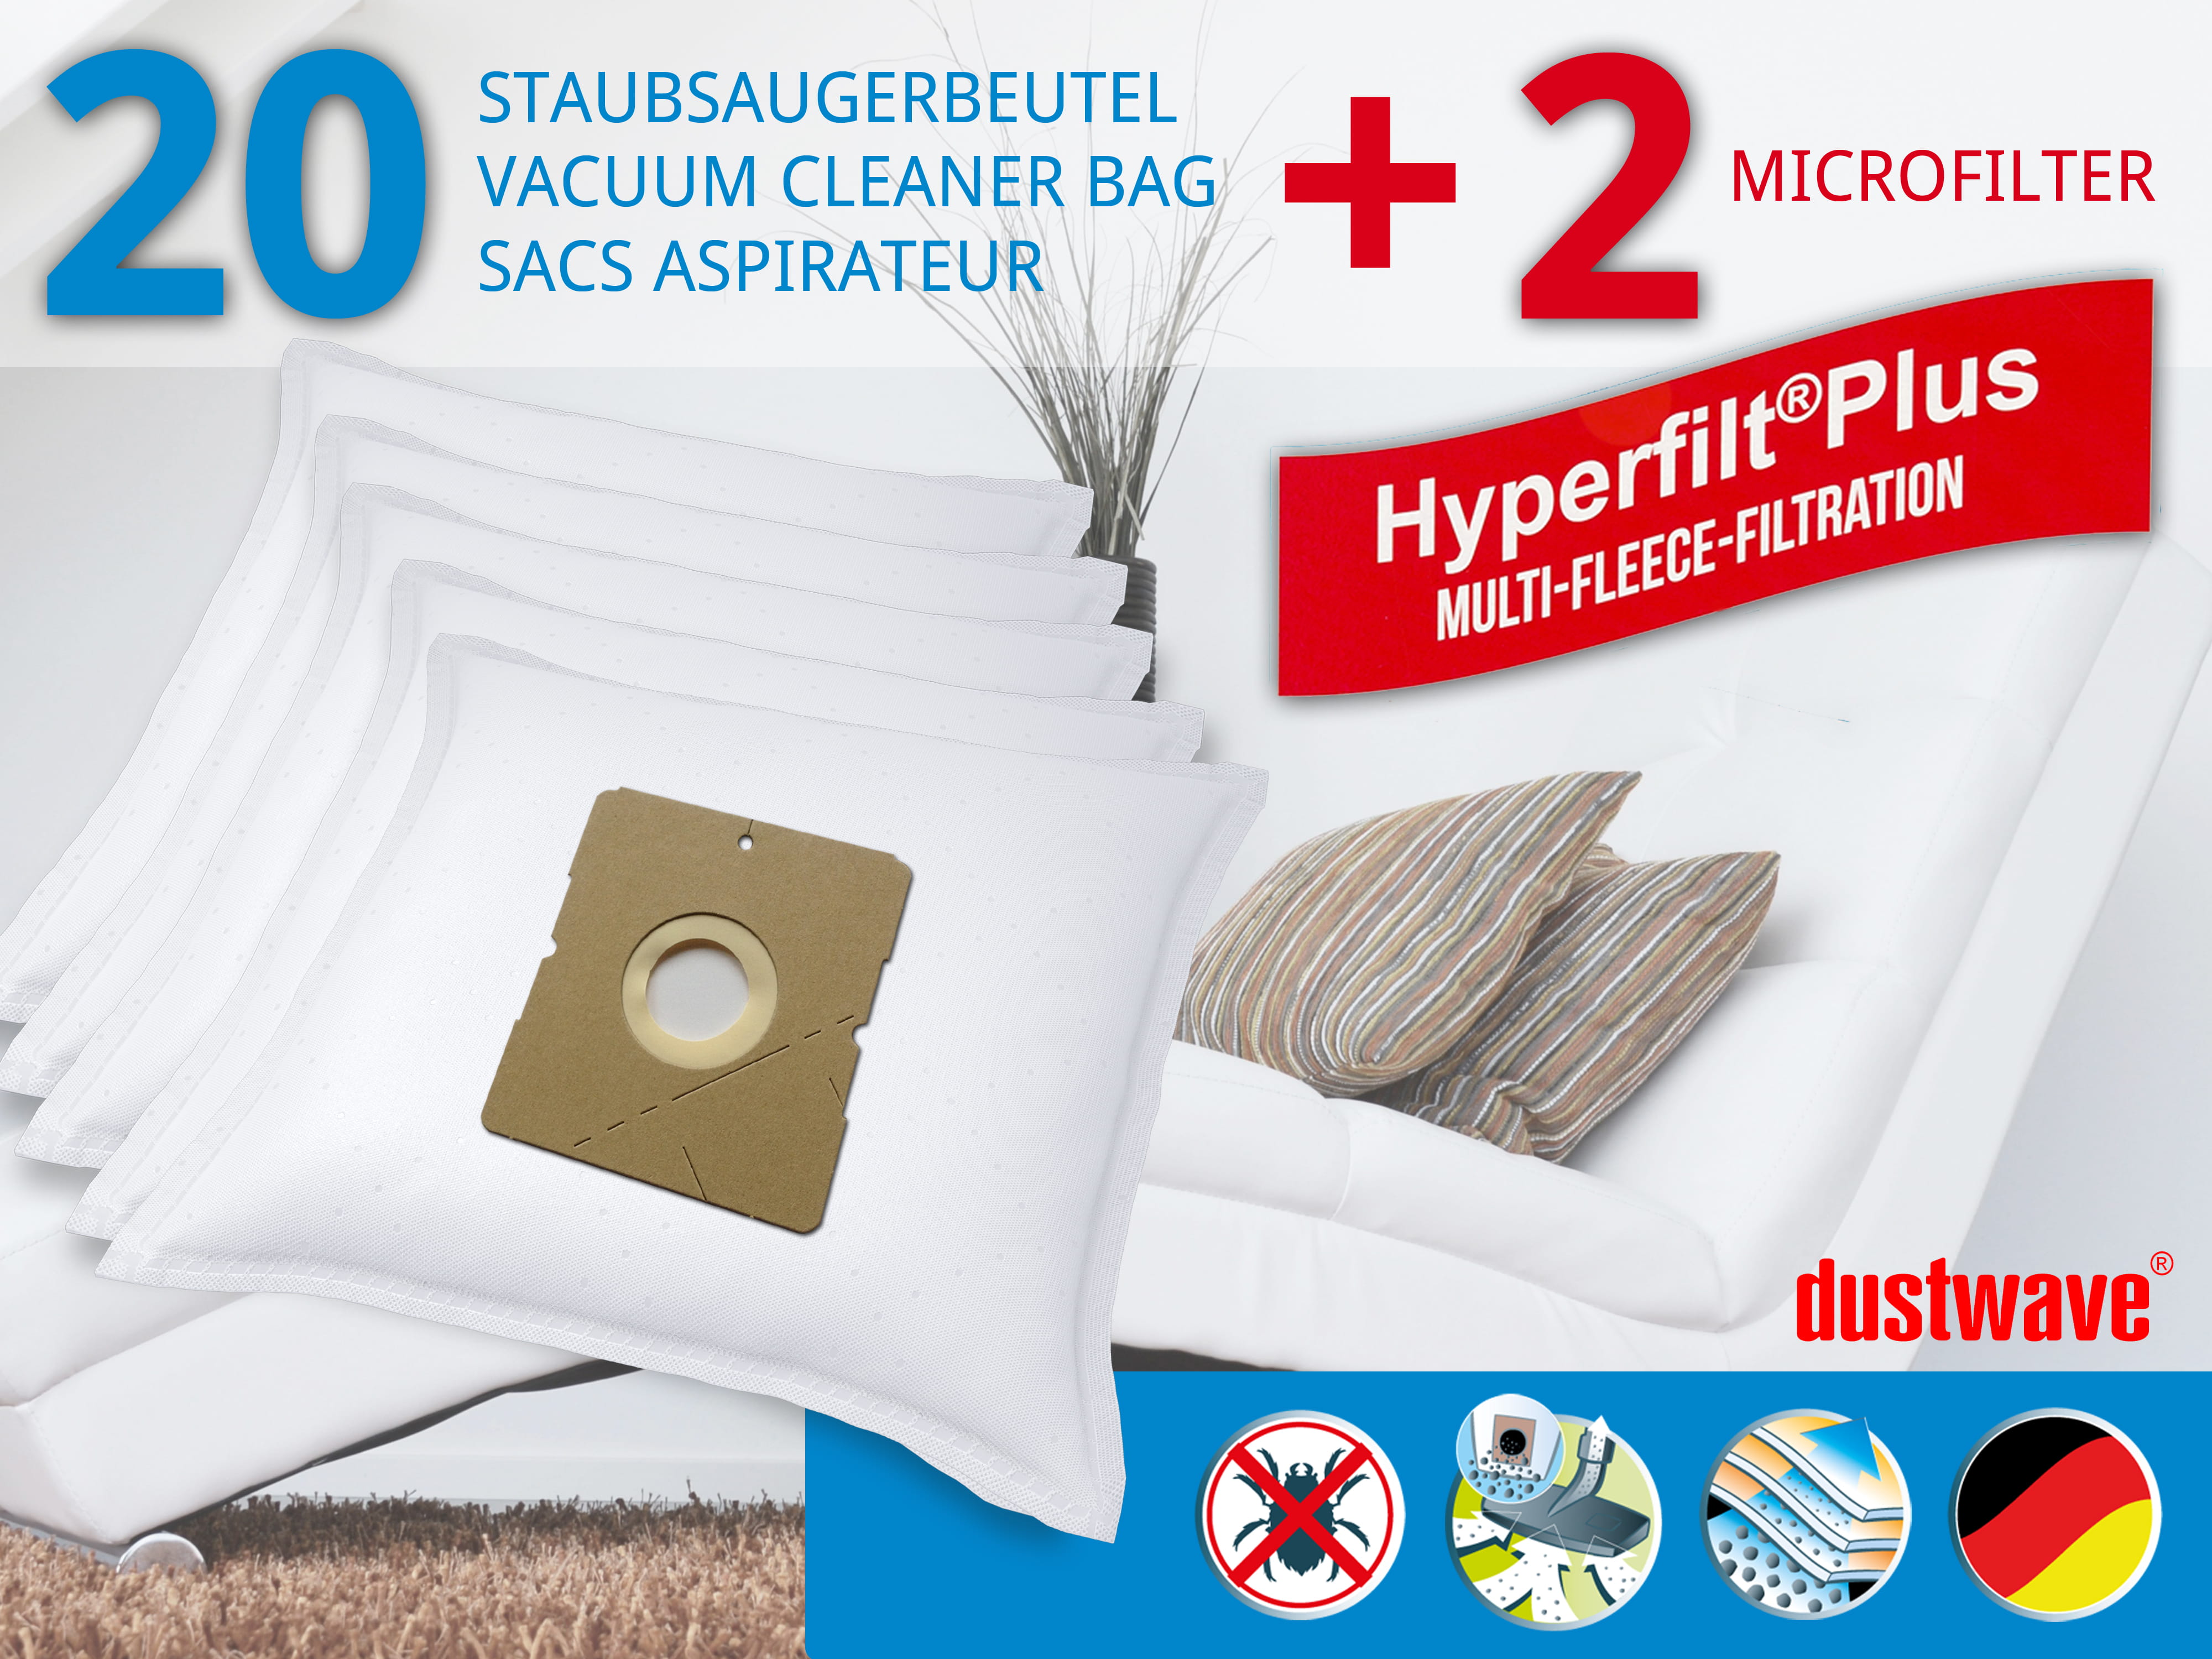 Dustwave® 20 Staubsaugerbeutel für Hoover H 4 / H4 - hocheffizient, mehrlagiges Mikrovlies mit Hygieneverschluss - Made in Germany